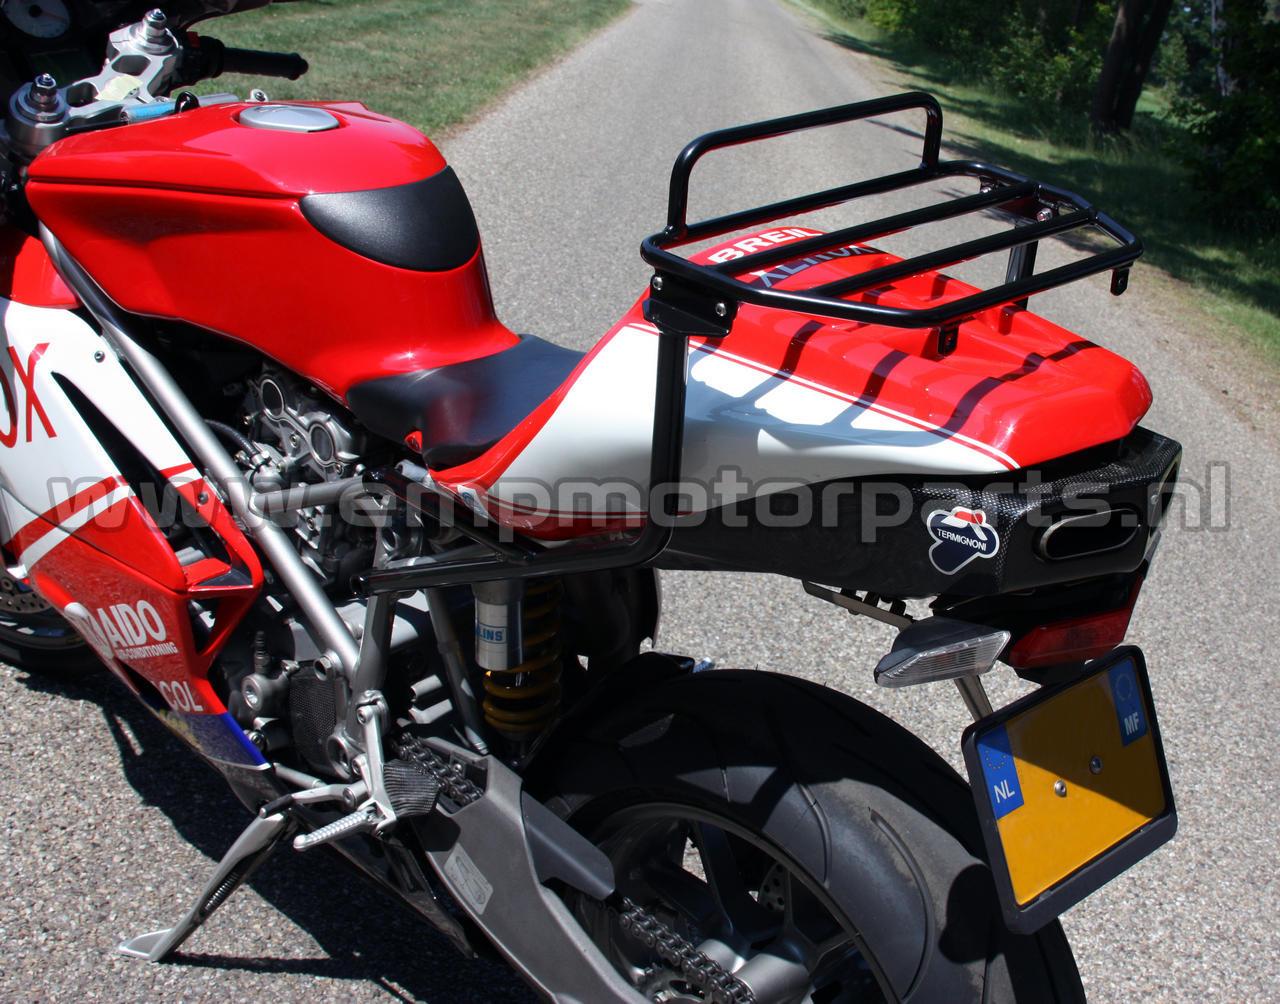 Luggage carrier Ducati Ducati (3)